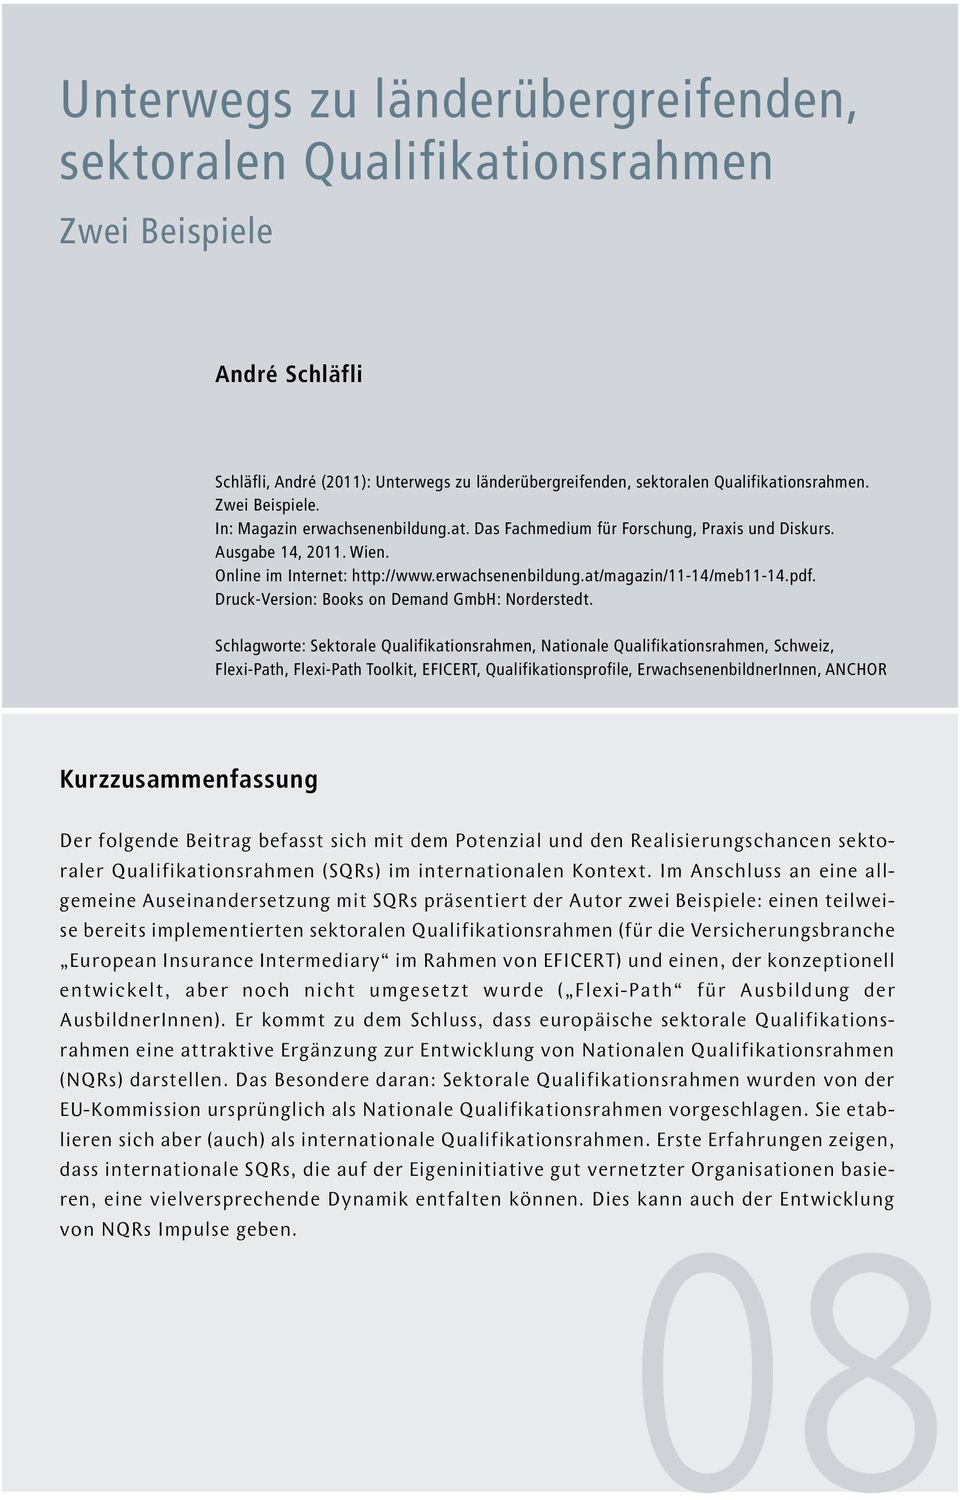 pdf. Druck-Version: Books on Demand GmbH: Norderstedt.